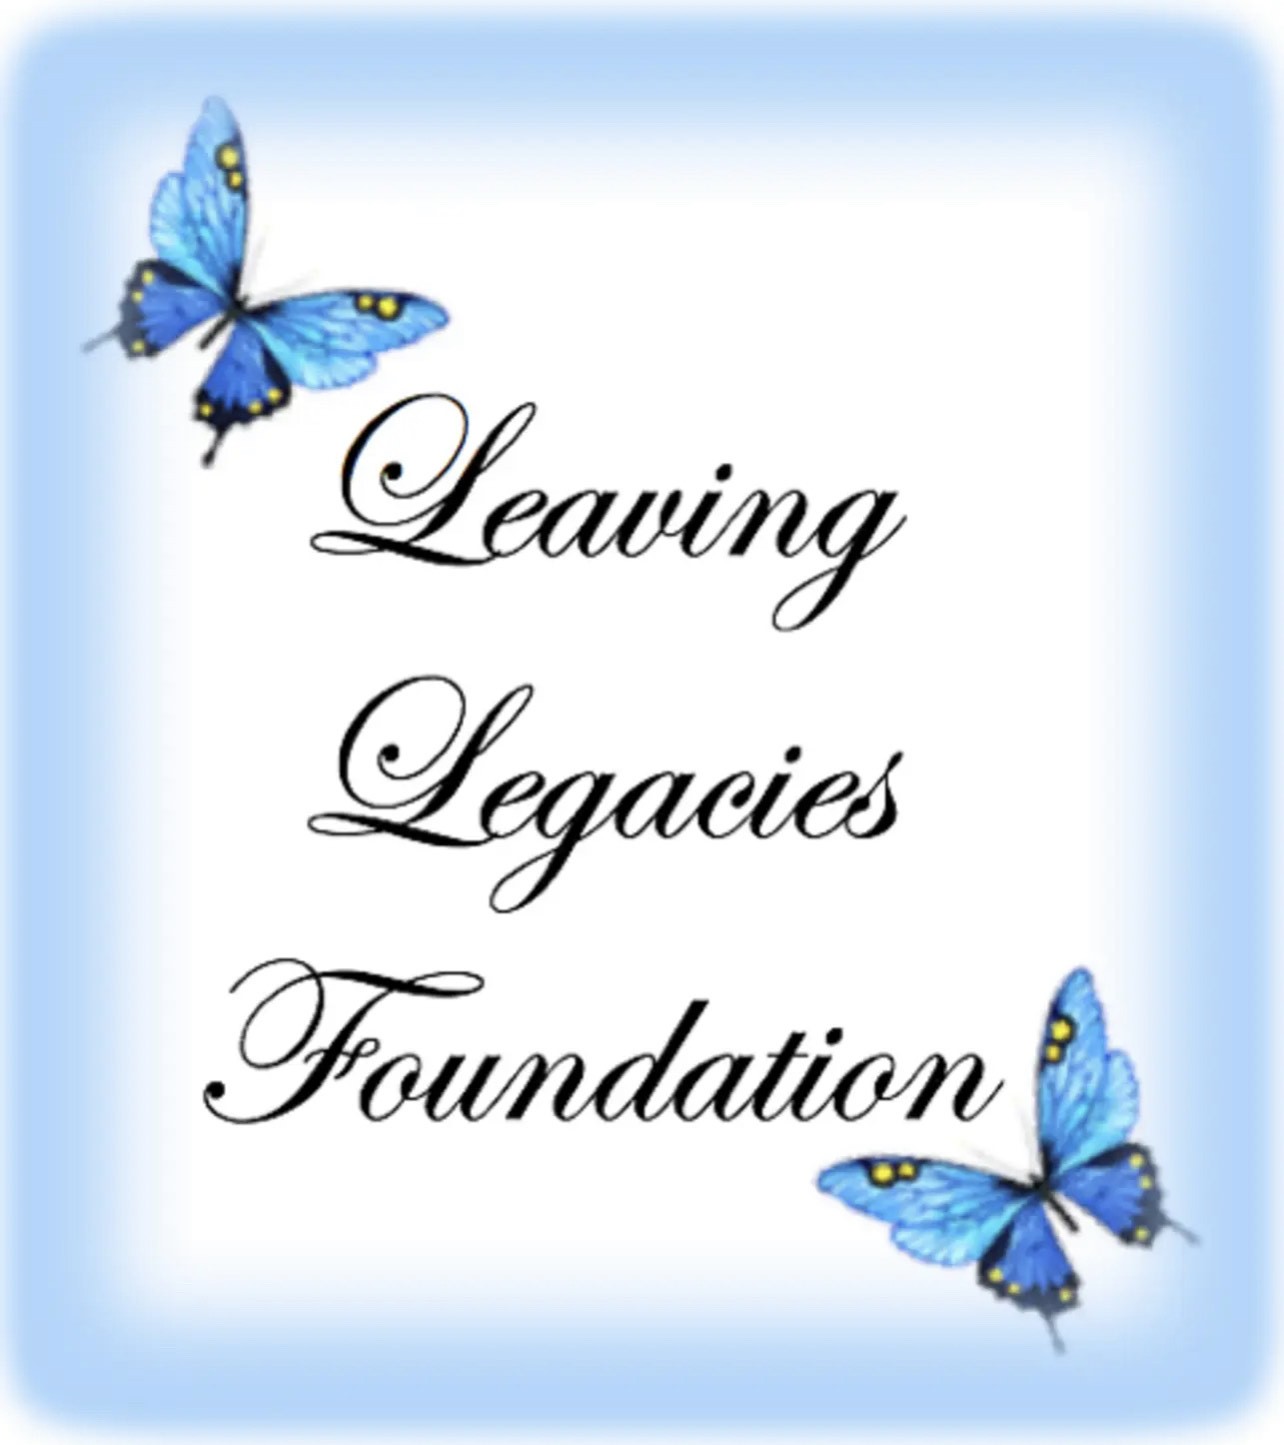 leaving legacies logo